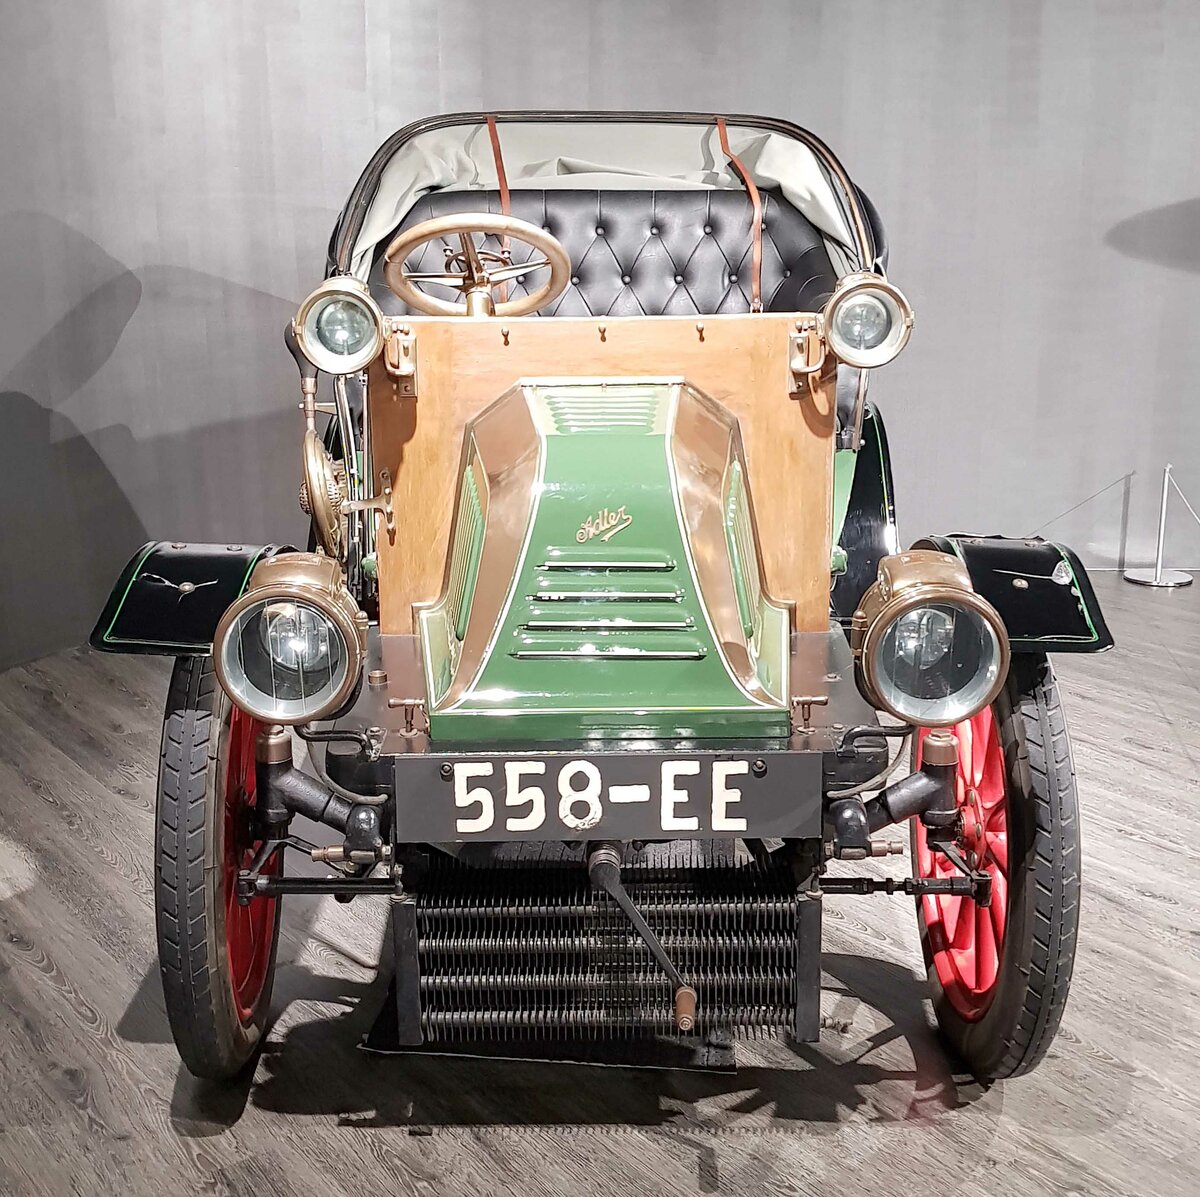 =Adler Motorwagen, Bauzeit 1900 - 1903, 510 ccm, 4,5 PS, 35 km/h. Ausgestellt im EFA Museum in Amerang, 06-2022